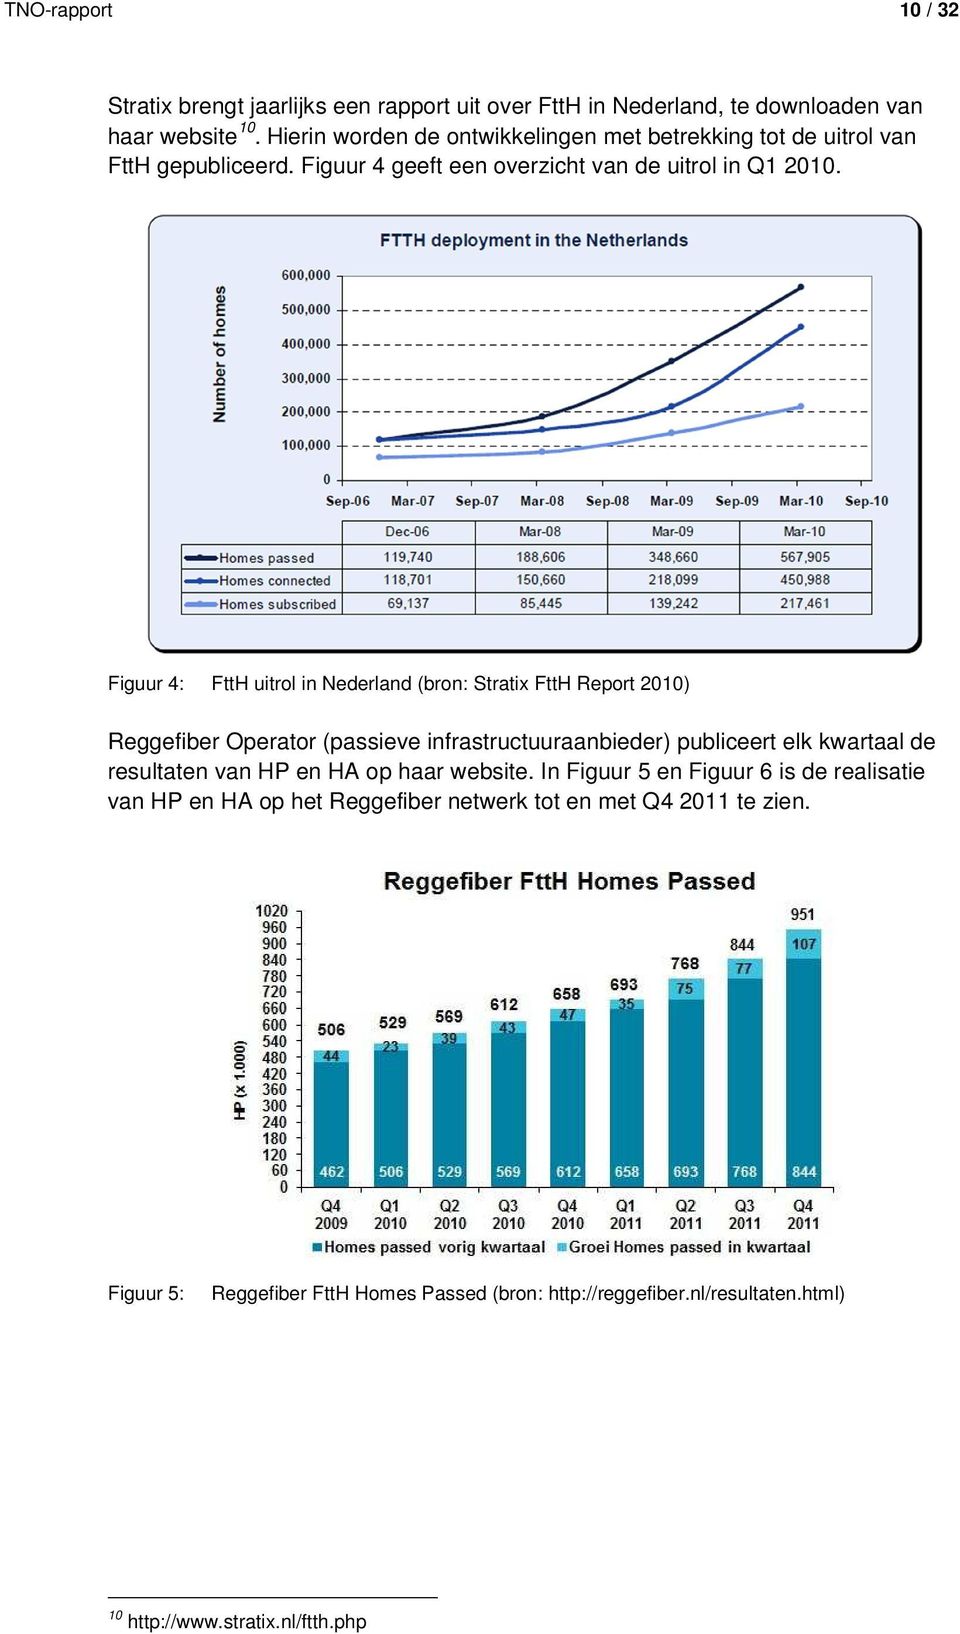 Figuur 4: FttH uitrol in Nederland (bron: Stratix FttH Report 2010) Reggefiber Operator (passieve infrastructuuraanbieder) publiceert elk kwartaal de resultaten van HP